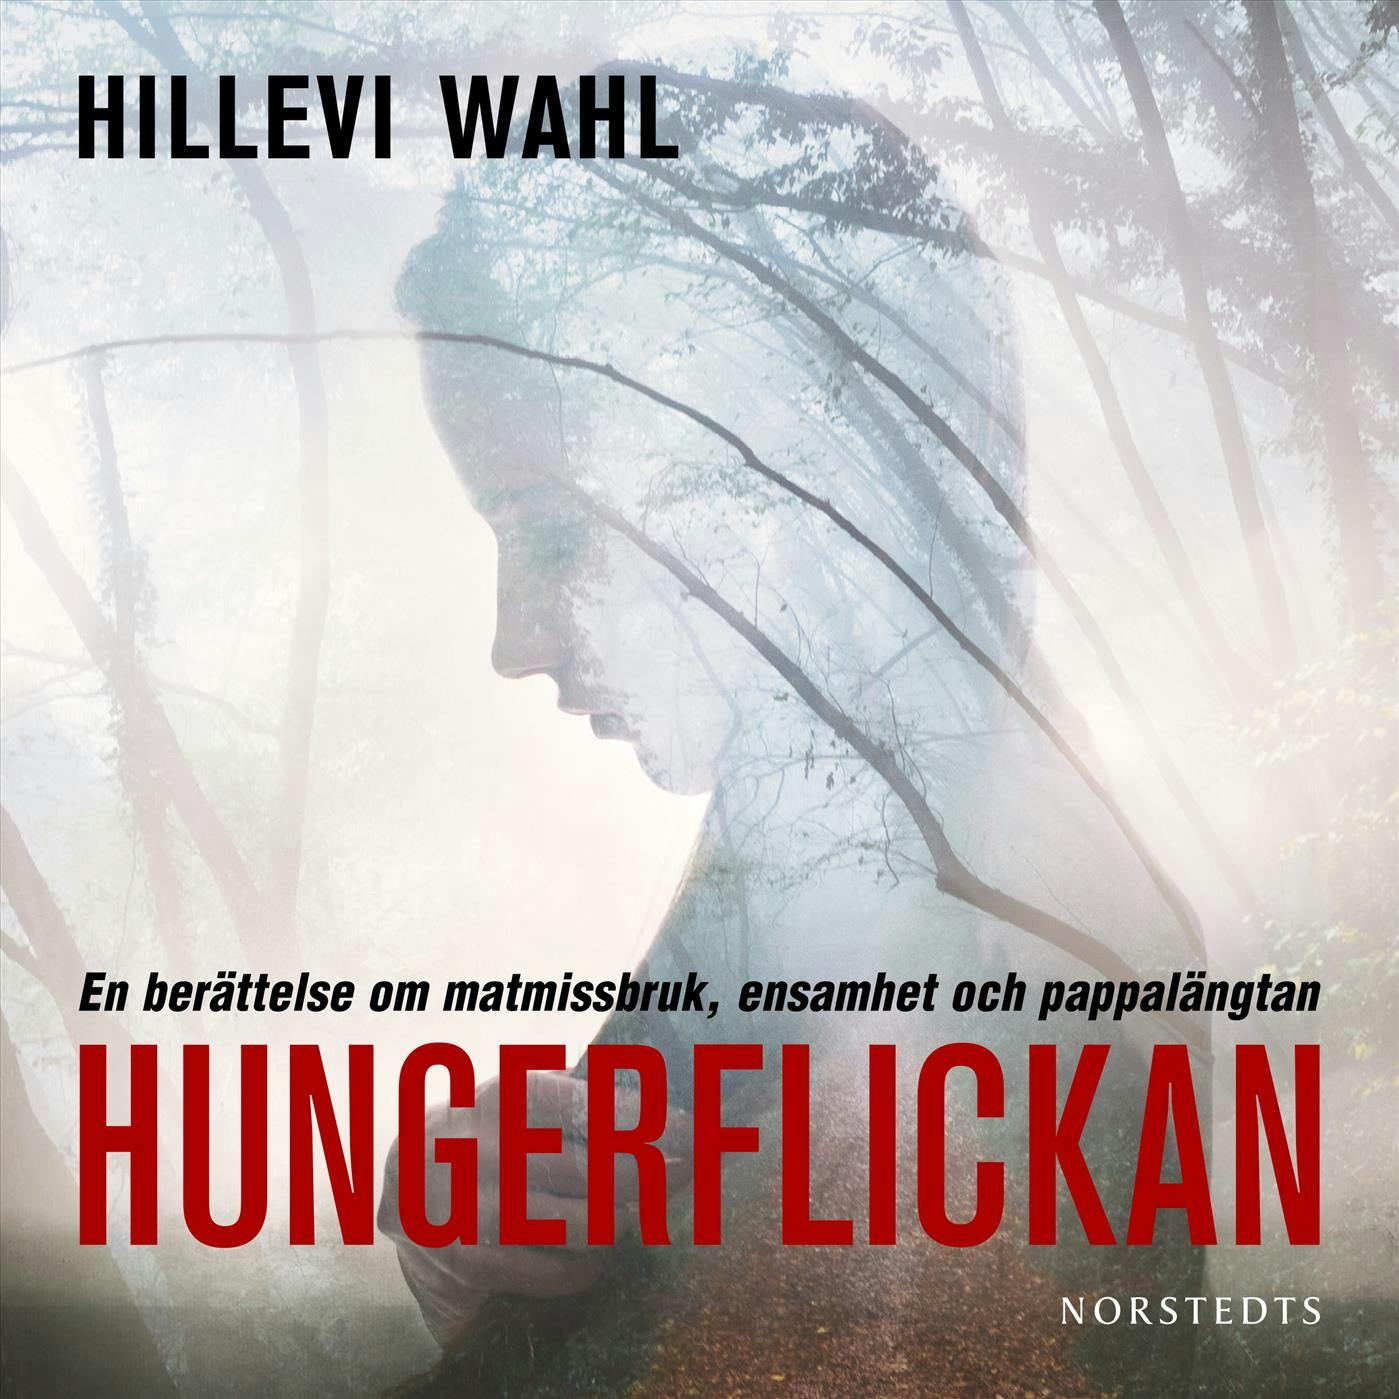 Hungerflickan - Hillevi Wahl